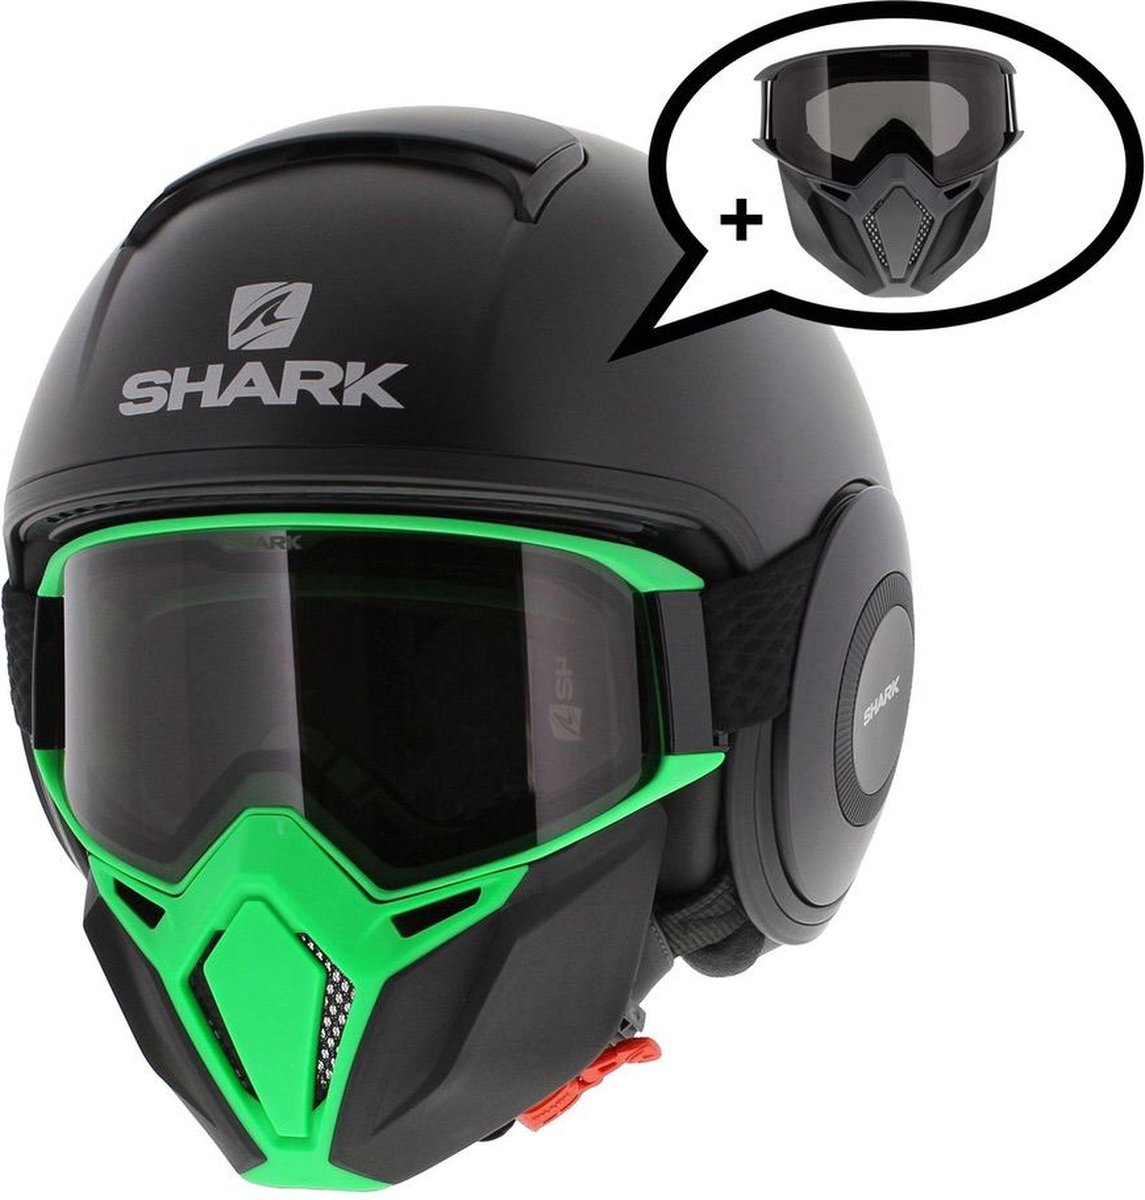 Shark Street Drak helm mat zwart groen S - Special Edition met gratis extra zwart antraciet mondstuk